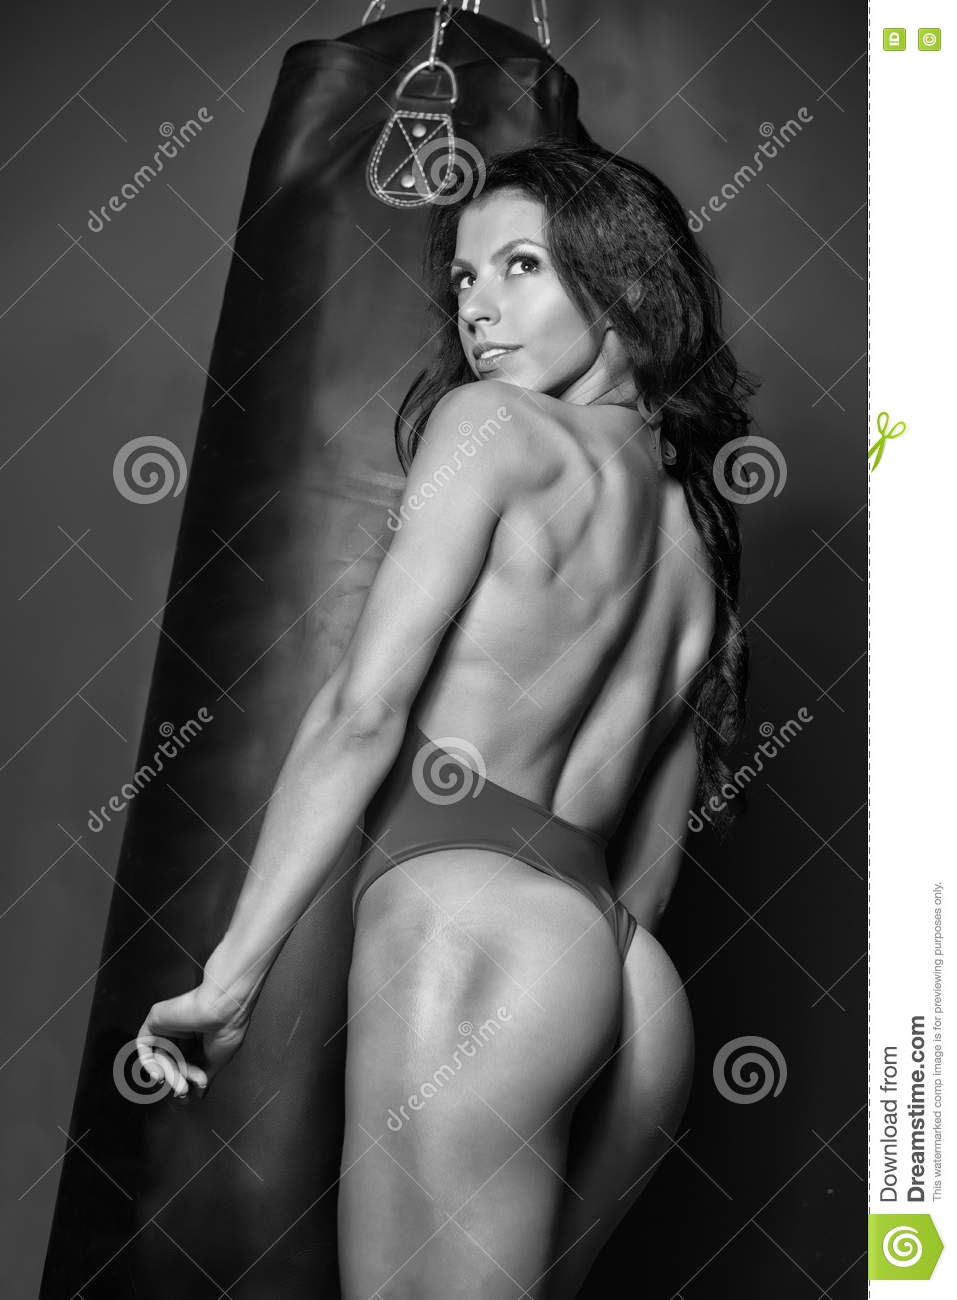 AK47 reccomend Erotica female fitness muscle